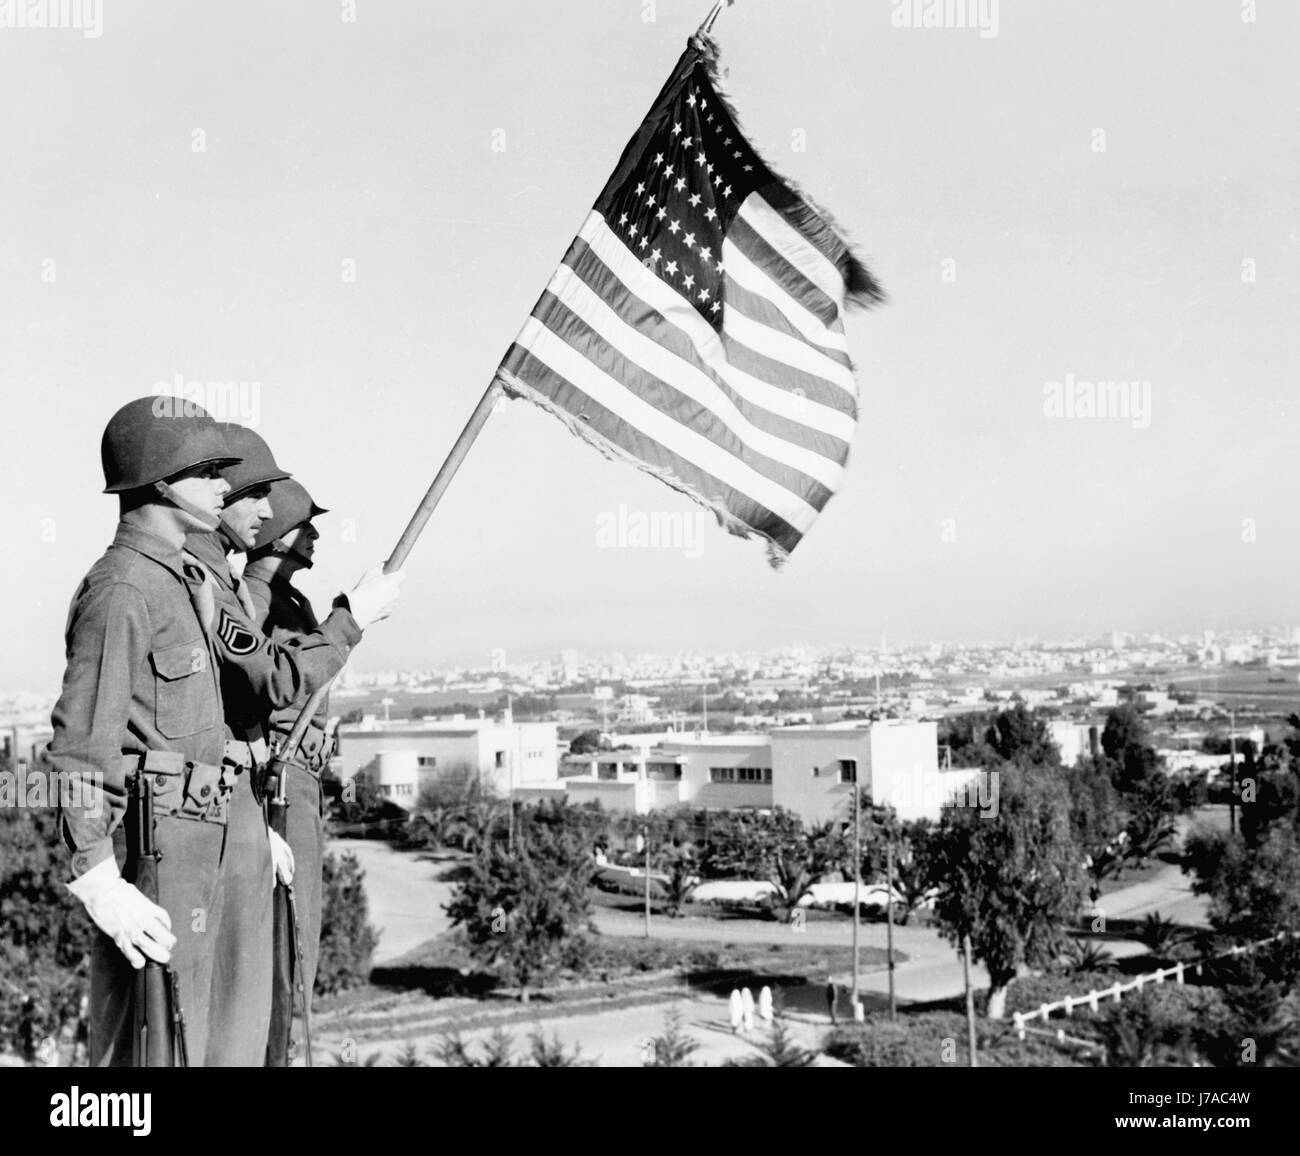 Trois soldats debout avec drapeau américain donnant sur la villa à Casablanca, Maroc, 1943. Banque D'Images